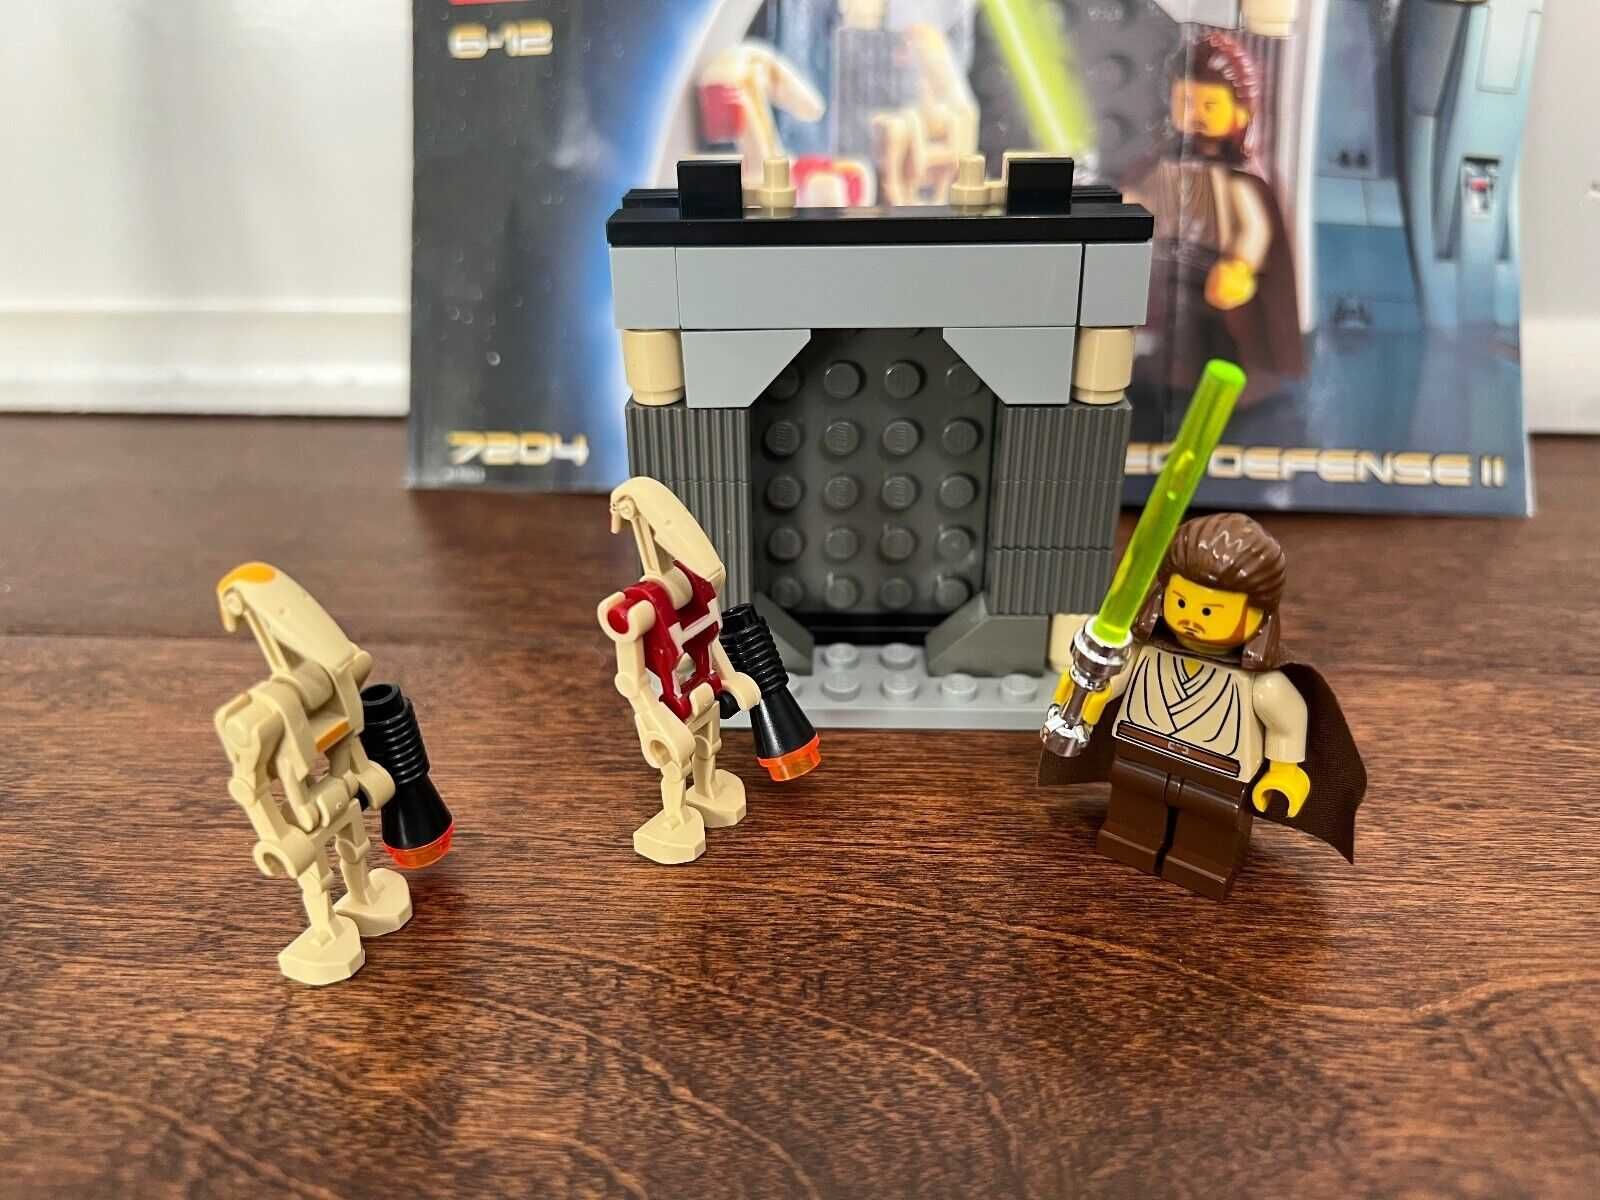 Lego Star Wars 7204 Jedi Defense II - w 100% kompletne z instrukcją